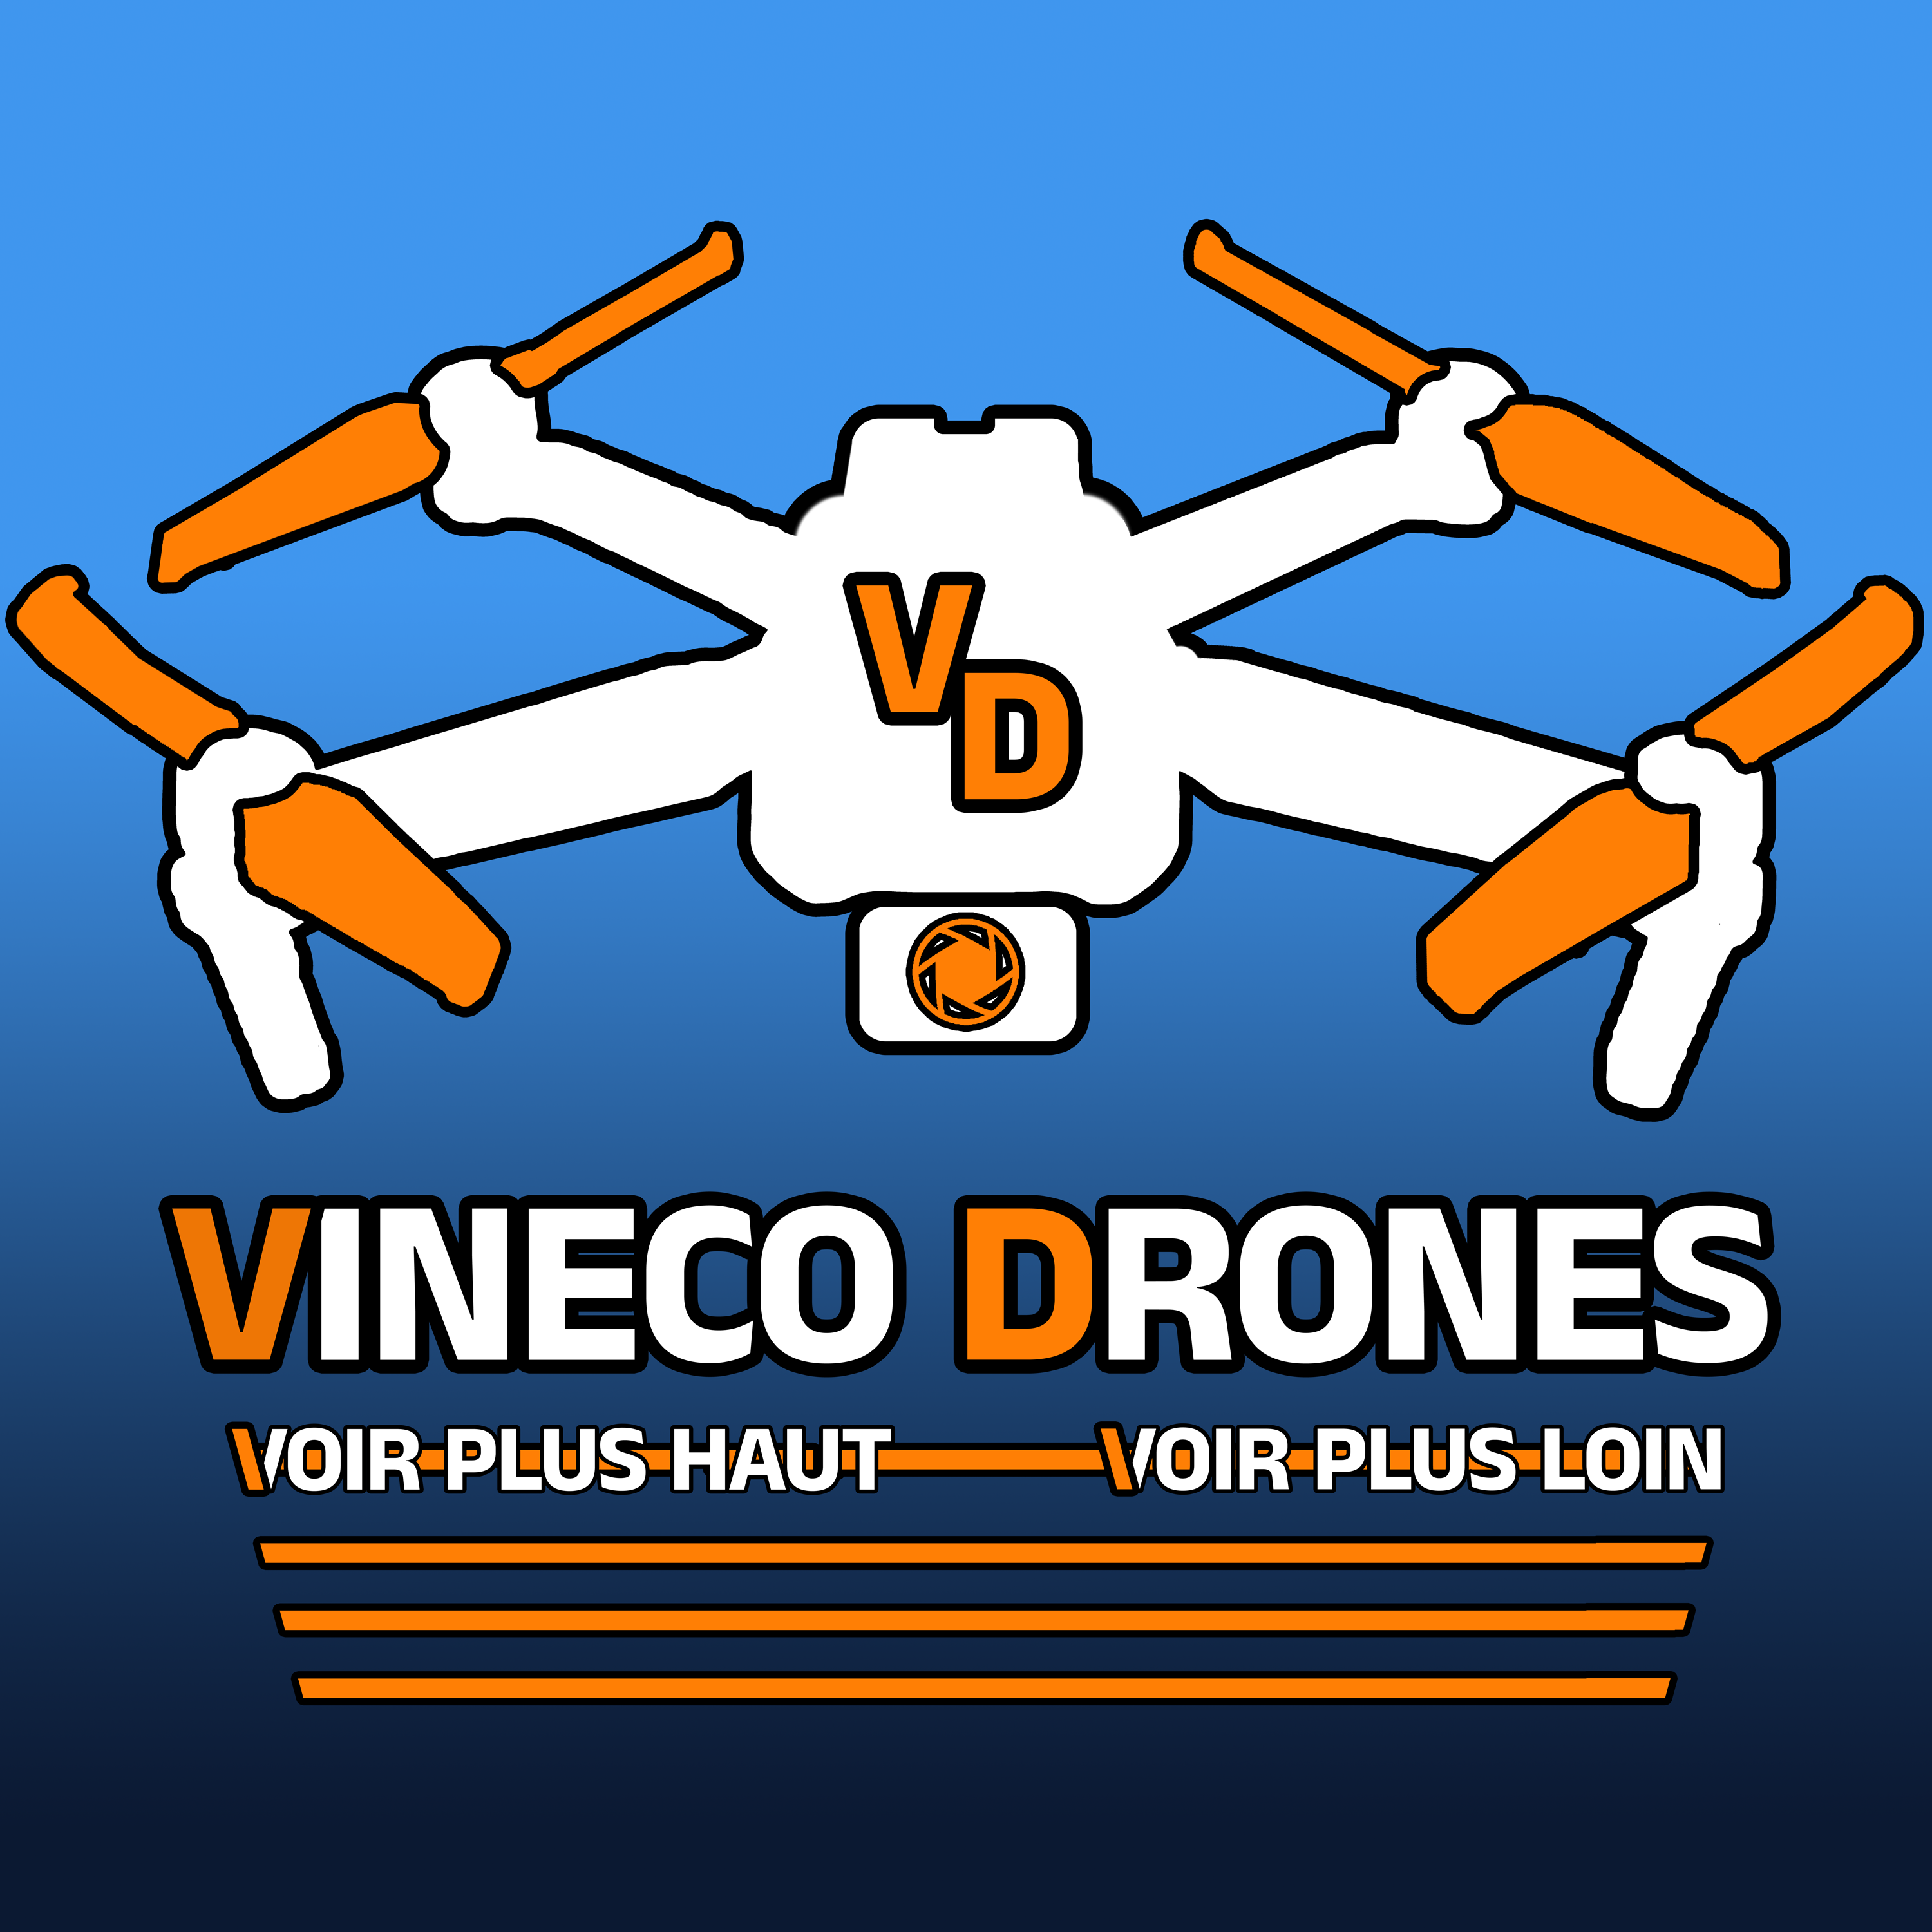 Vineco Drones